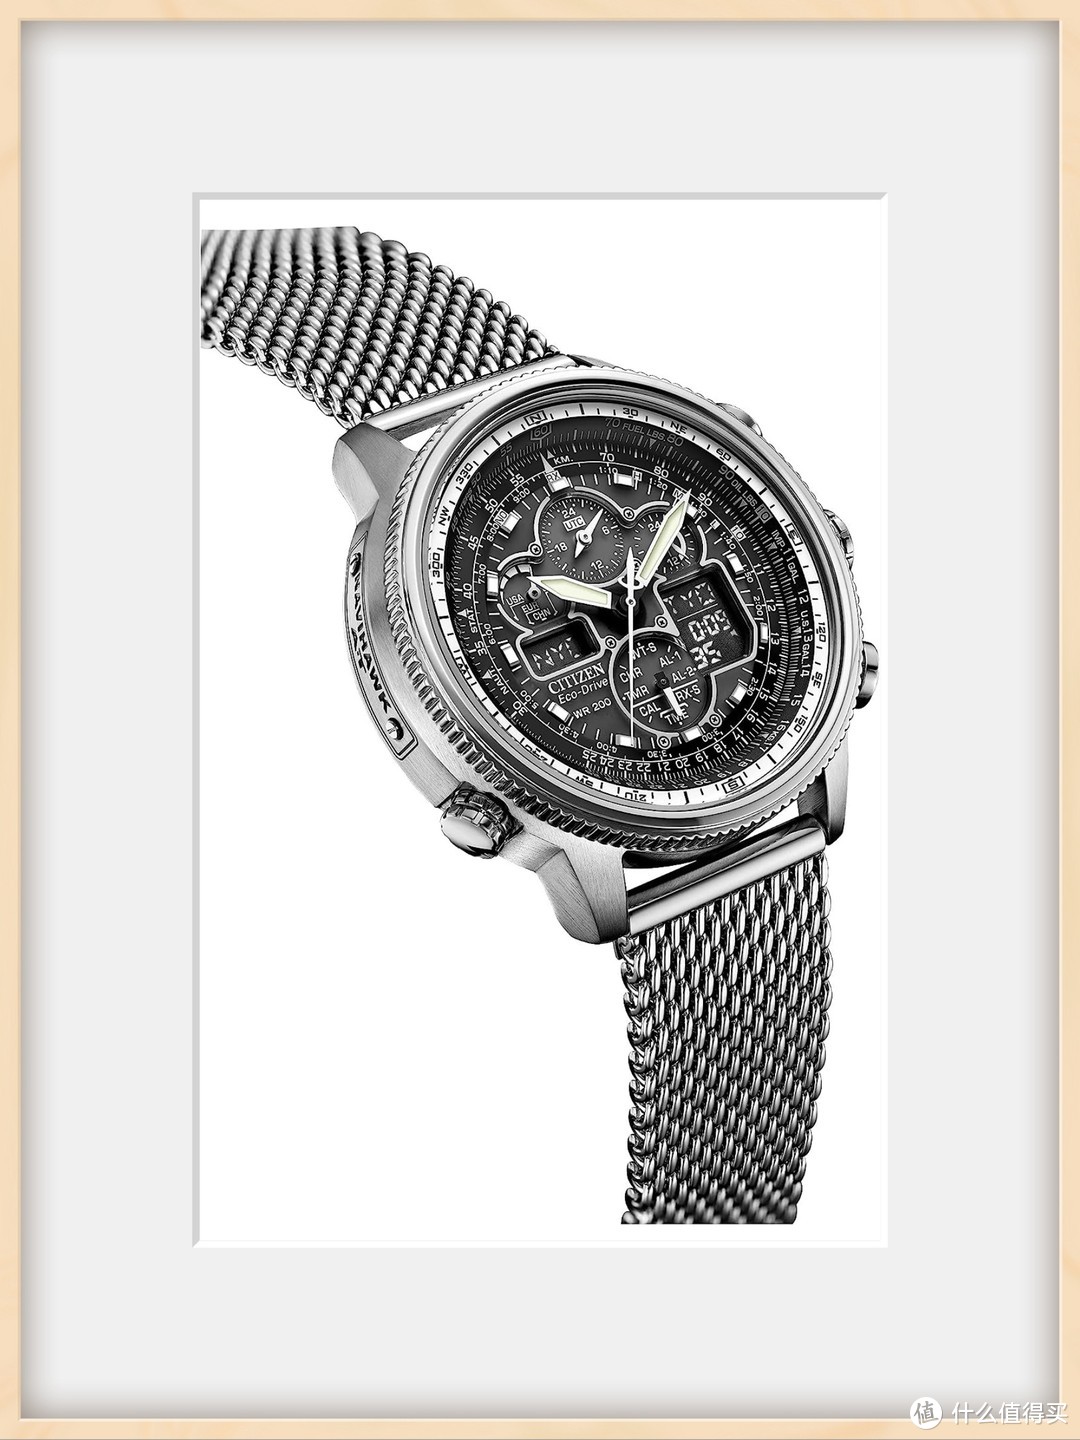  西铁城 超级空中之鹰系列 JY8030-83E 男士光动能手表，让你体验创新与实用的完美结合！